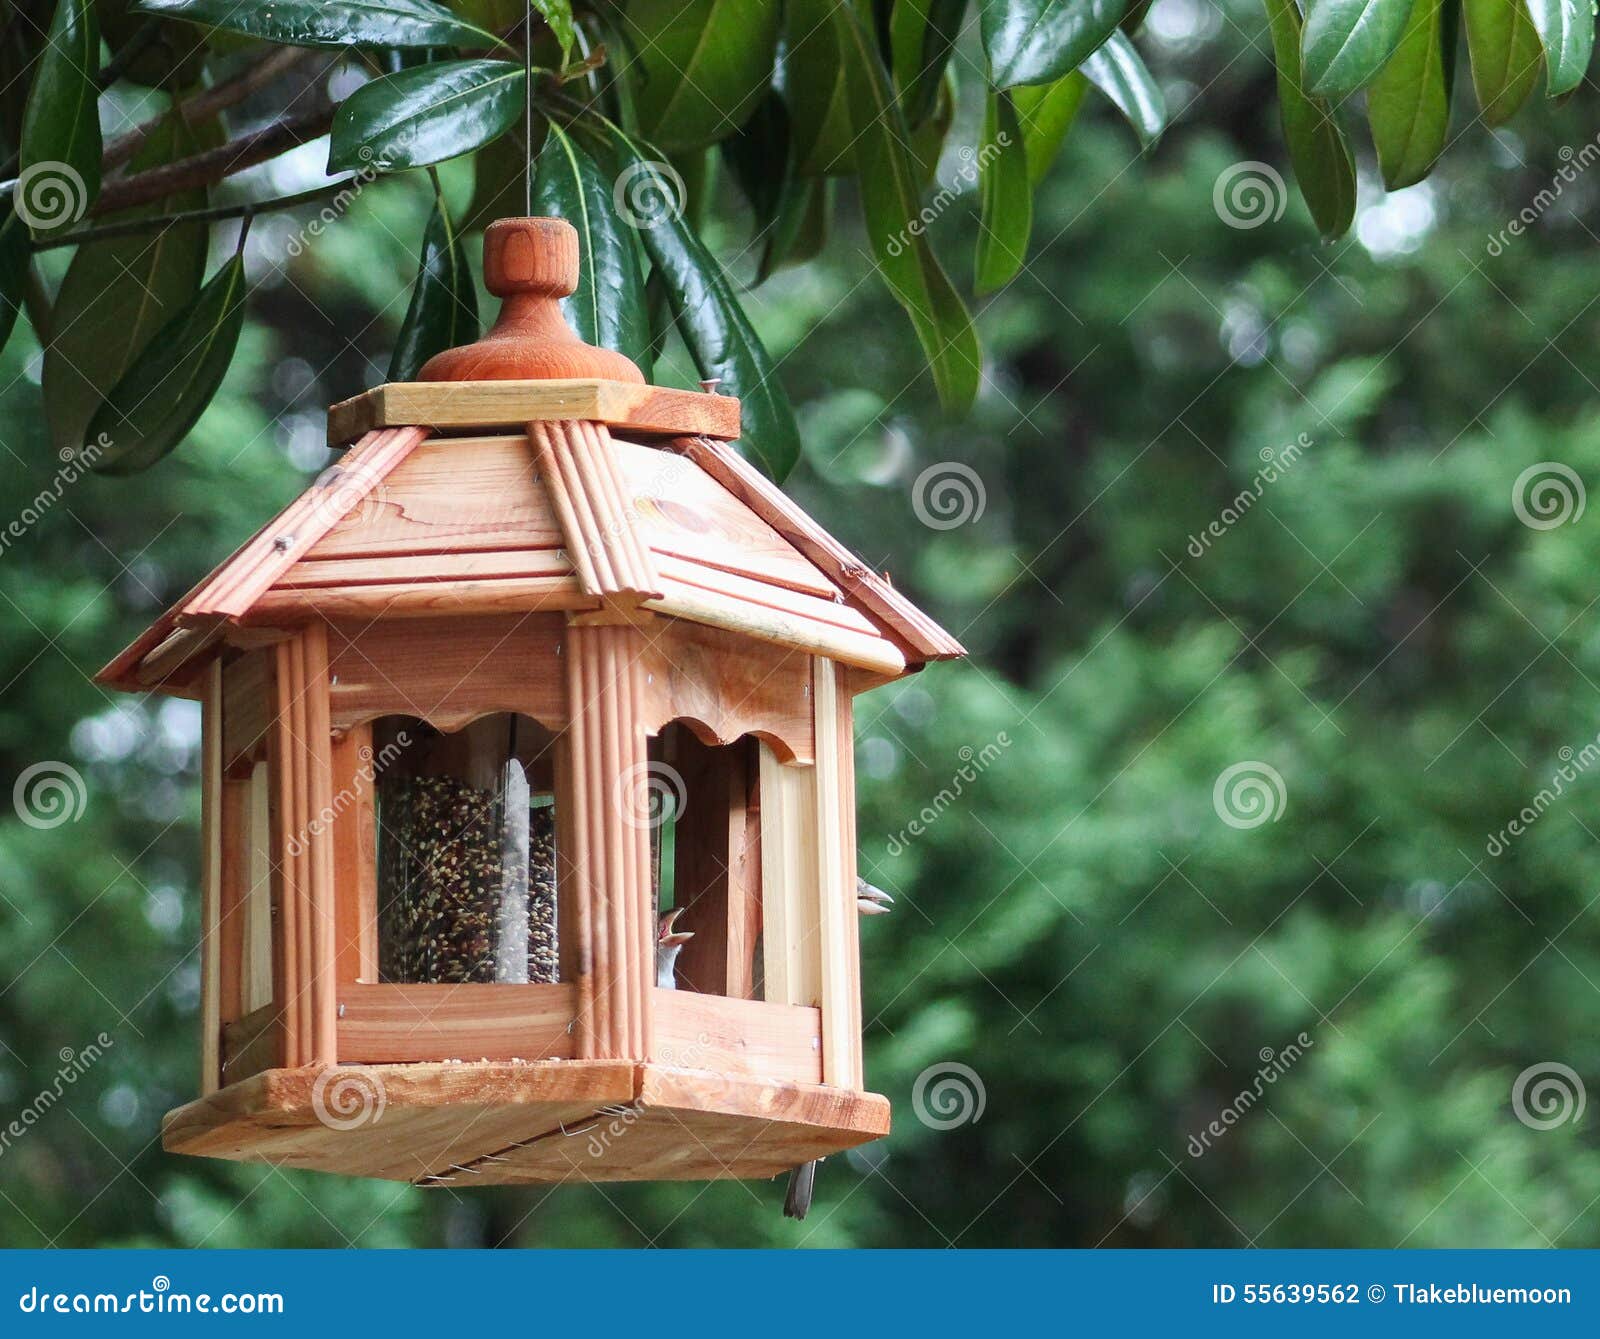 bird feeder-beaks open